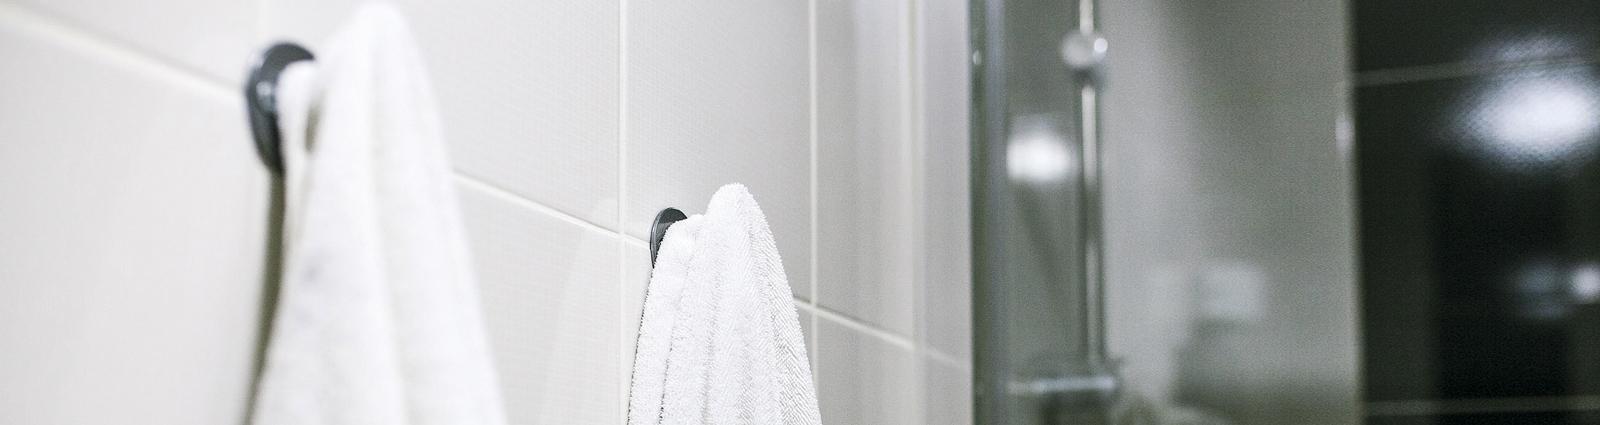 Eine anstehende Badrenovierung oder einfach nur ein Austausch der Dusch- oder Badewannenausstattung? HOTEL MEGASTORE ist ein Multispezialist-Großhandel im Bereich Dusch- und Badewannenausstattung.